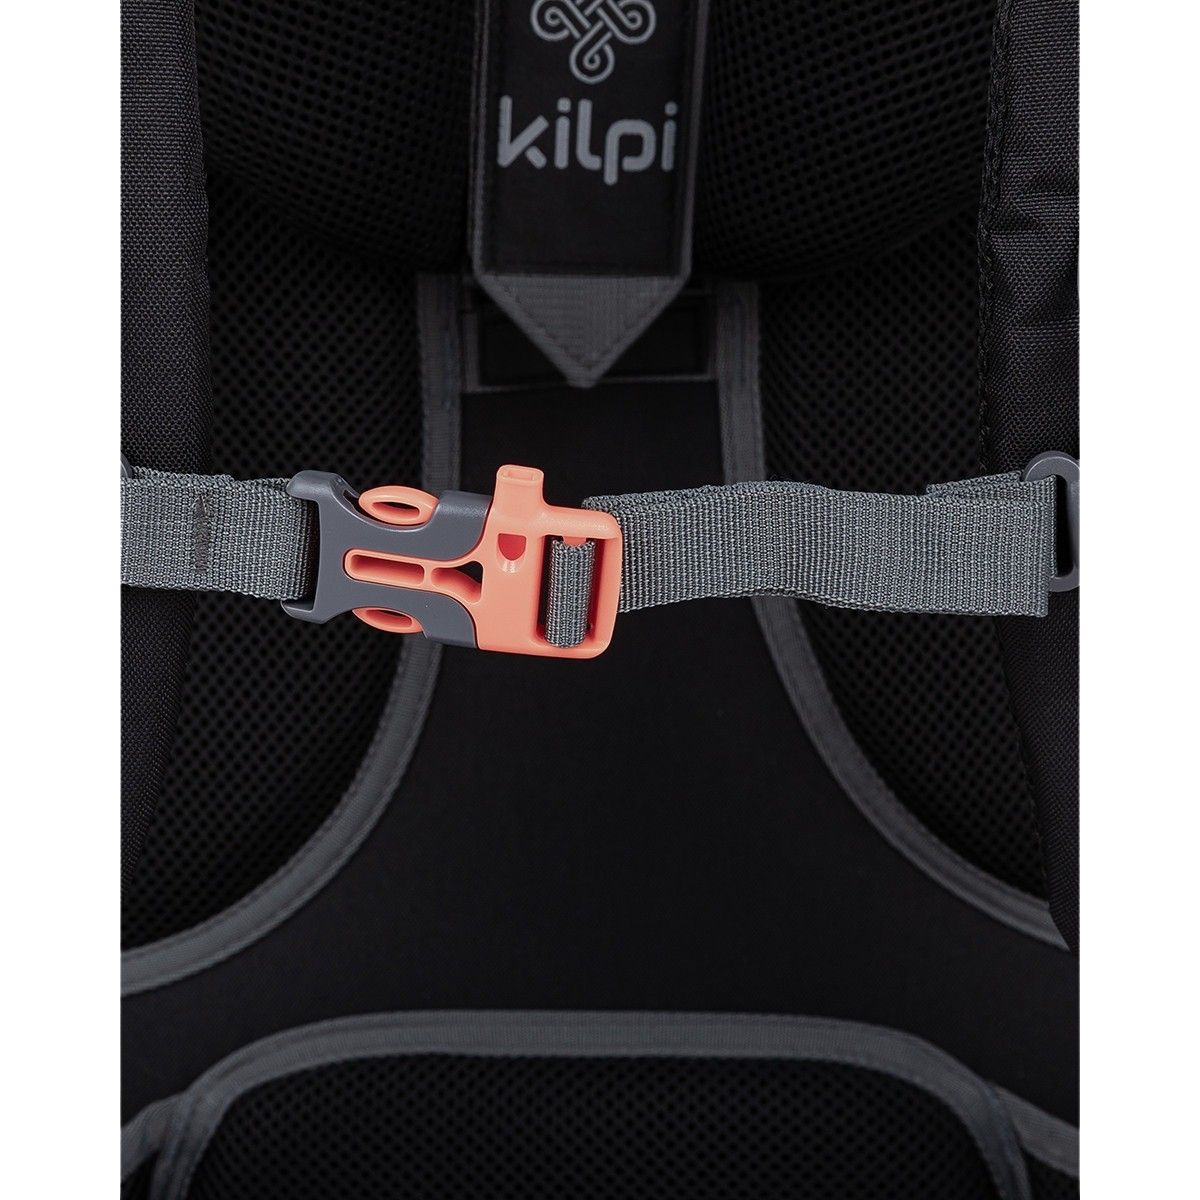 Kilpi Ecrins, backpack, 45+5L, red